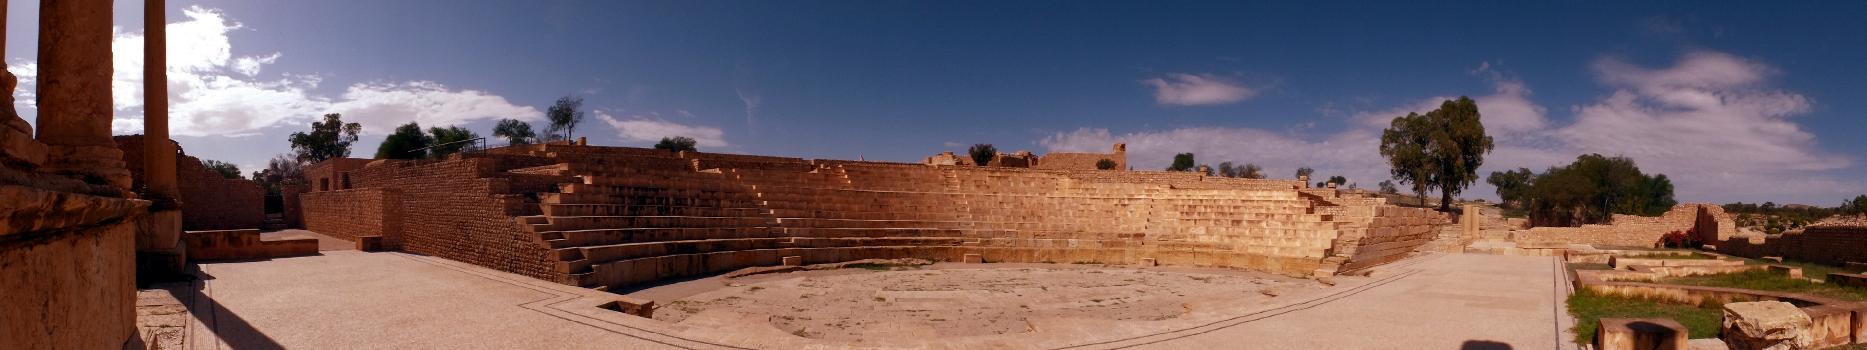 Roman Theater of Sbeitla